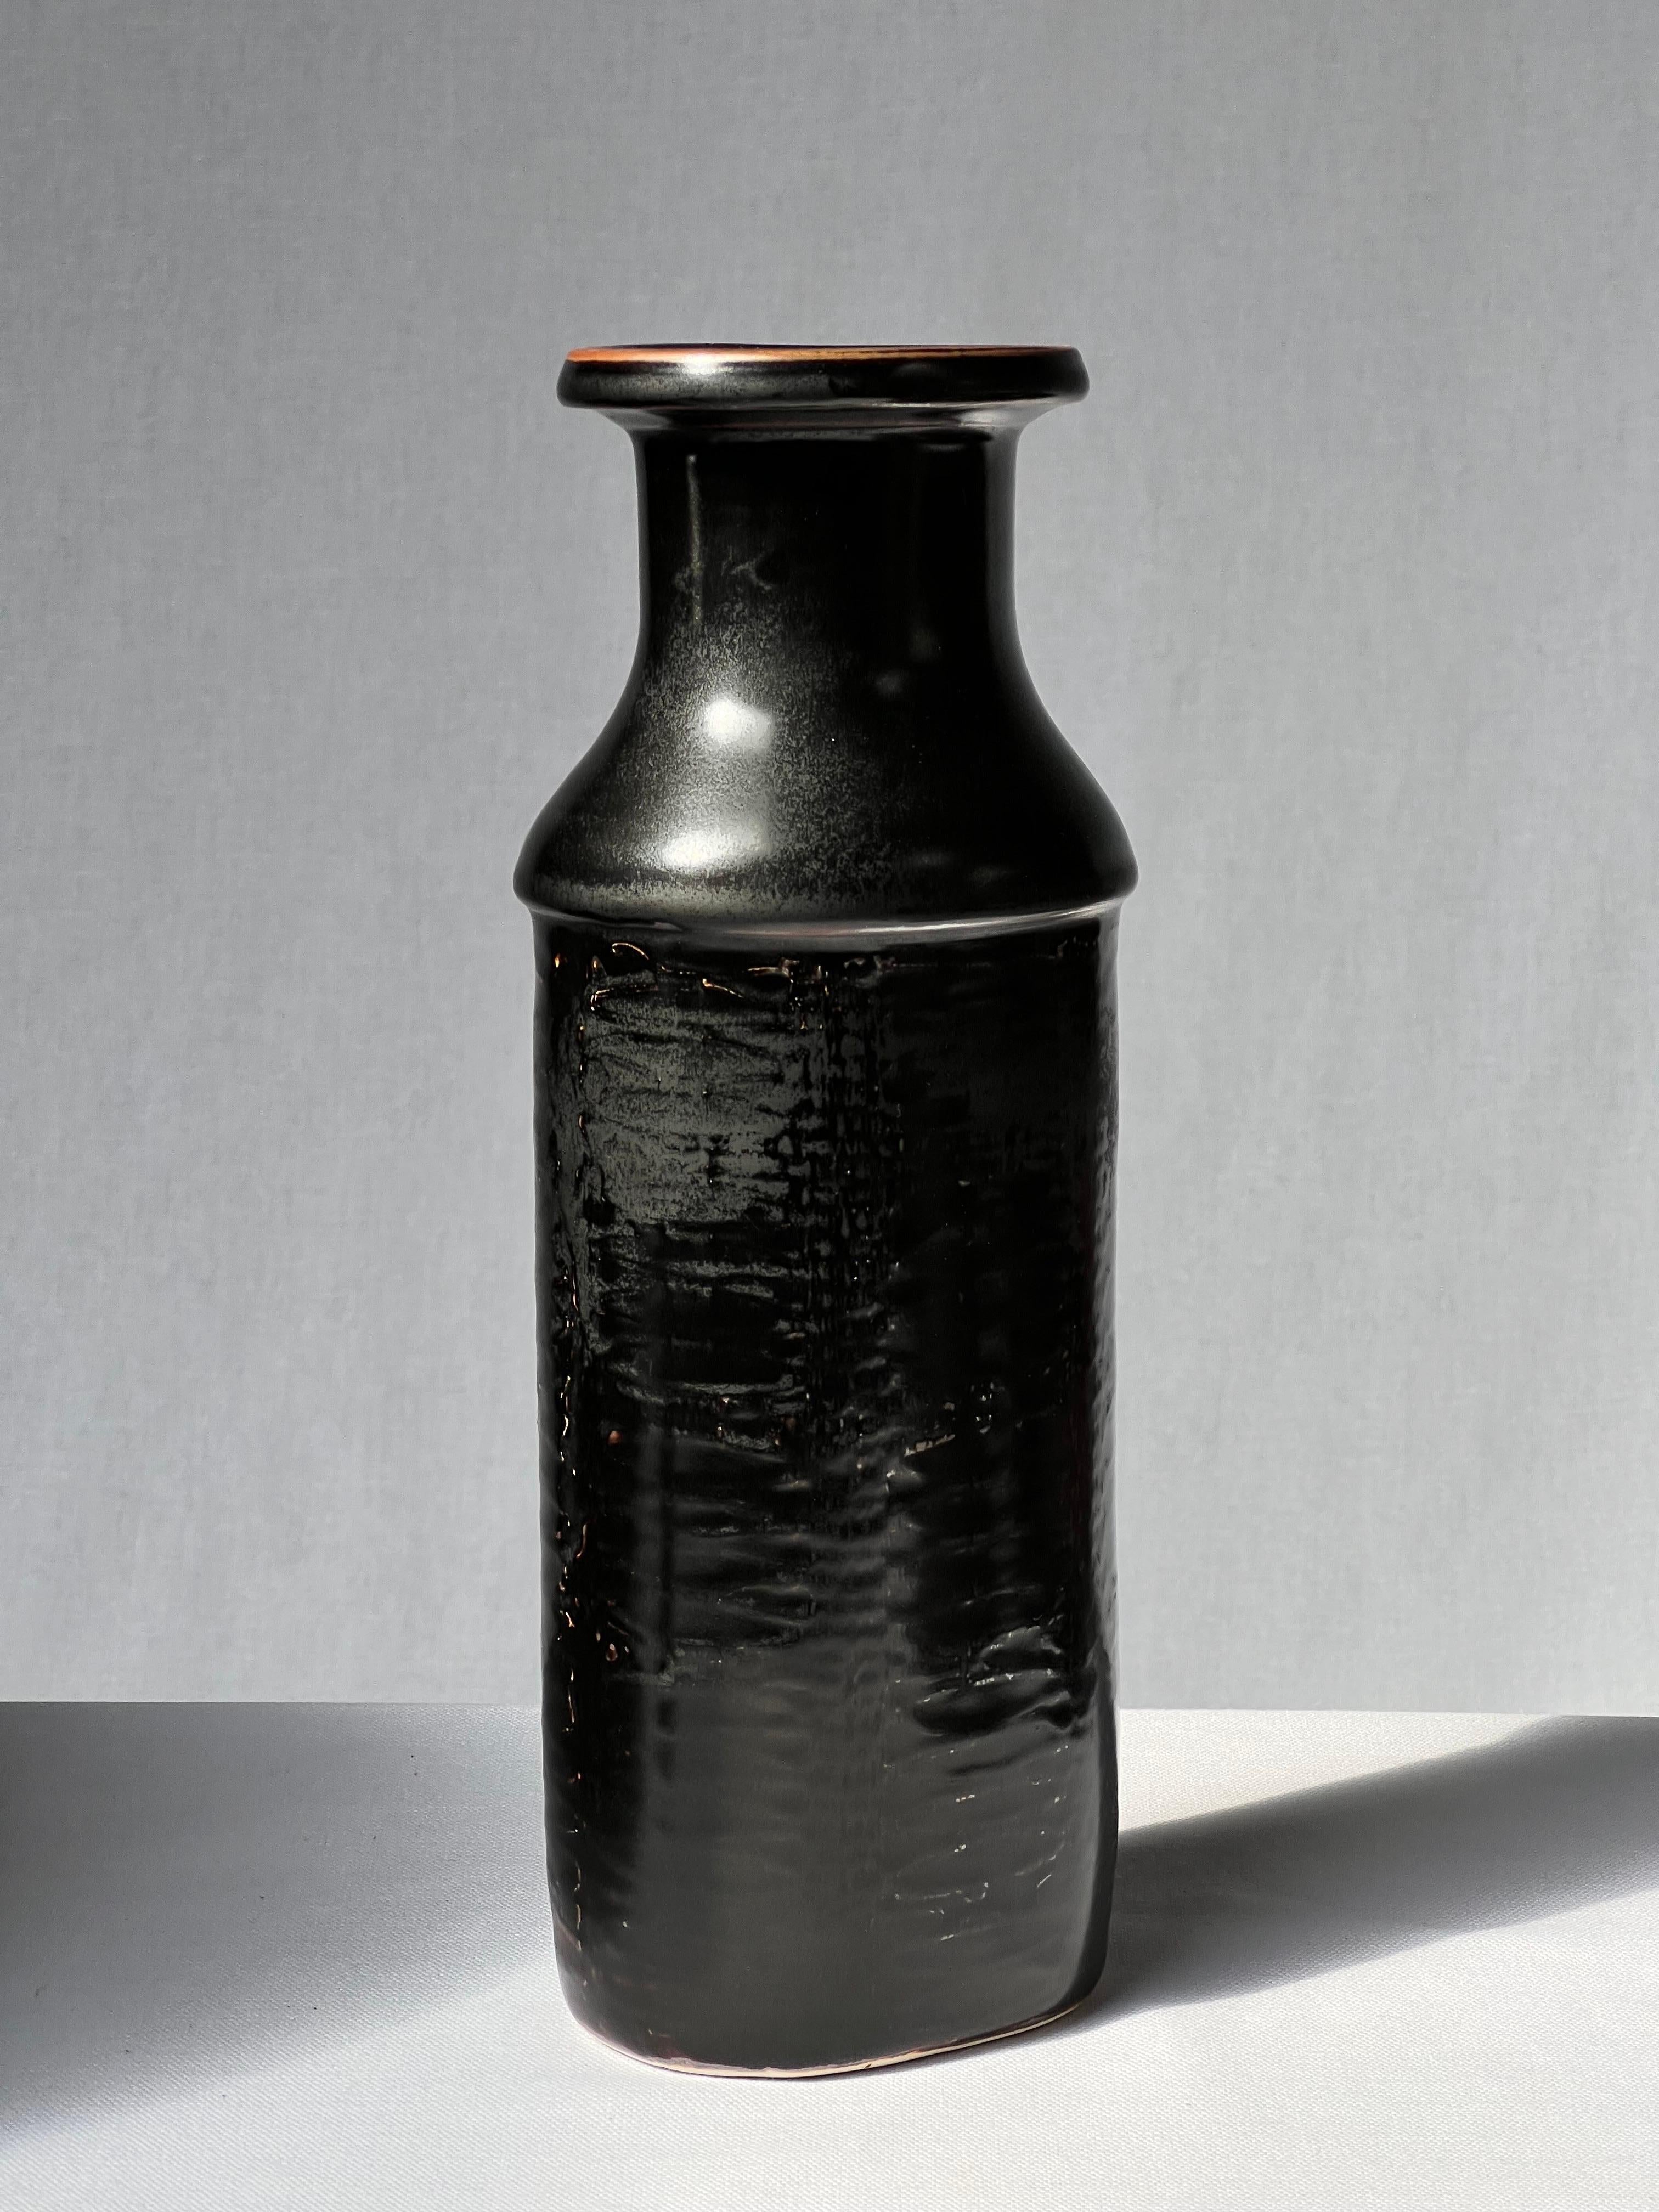 Ceramic Stig Lindberg Unique Vase in black Glaze Tenmoku Made by Hand Sweden 1978 For Sale